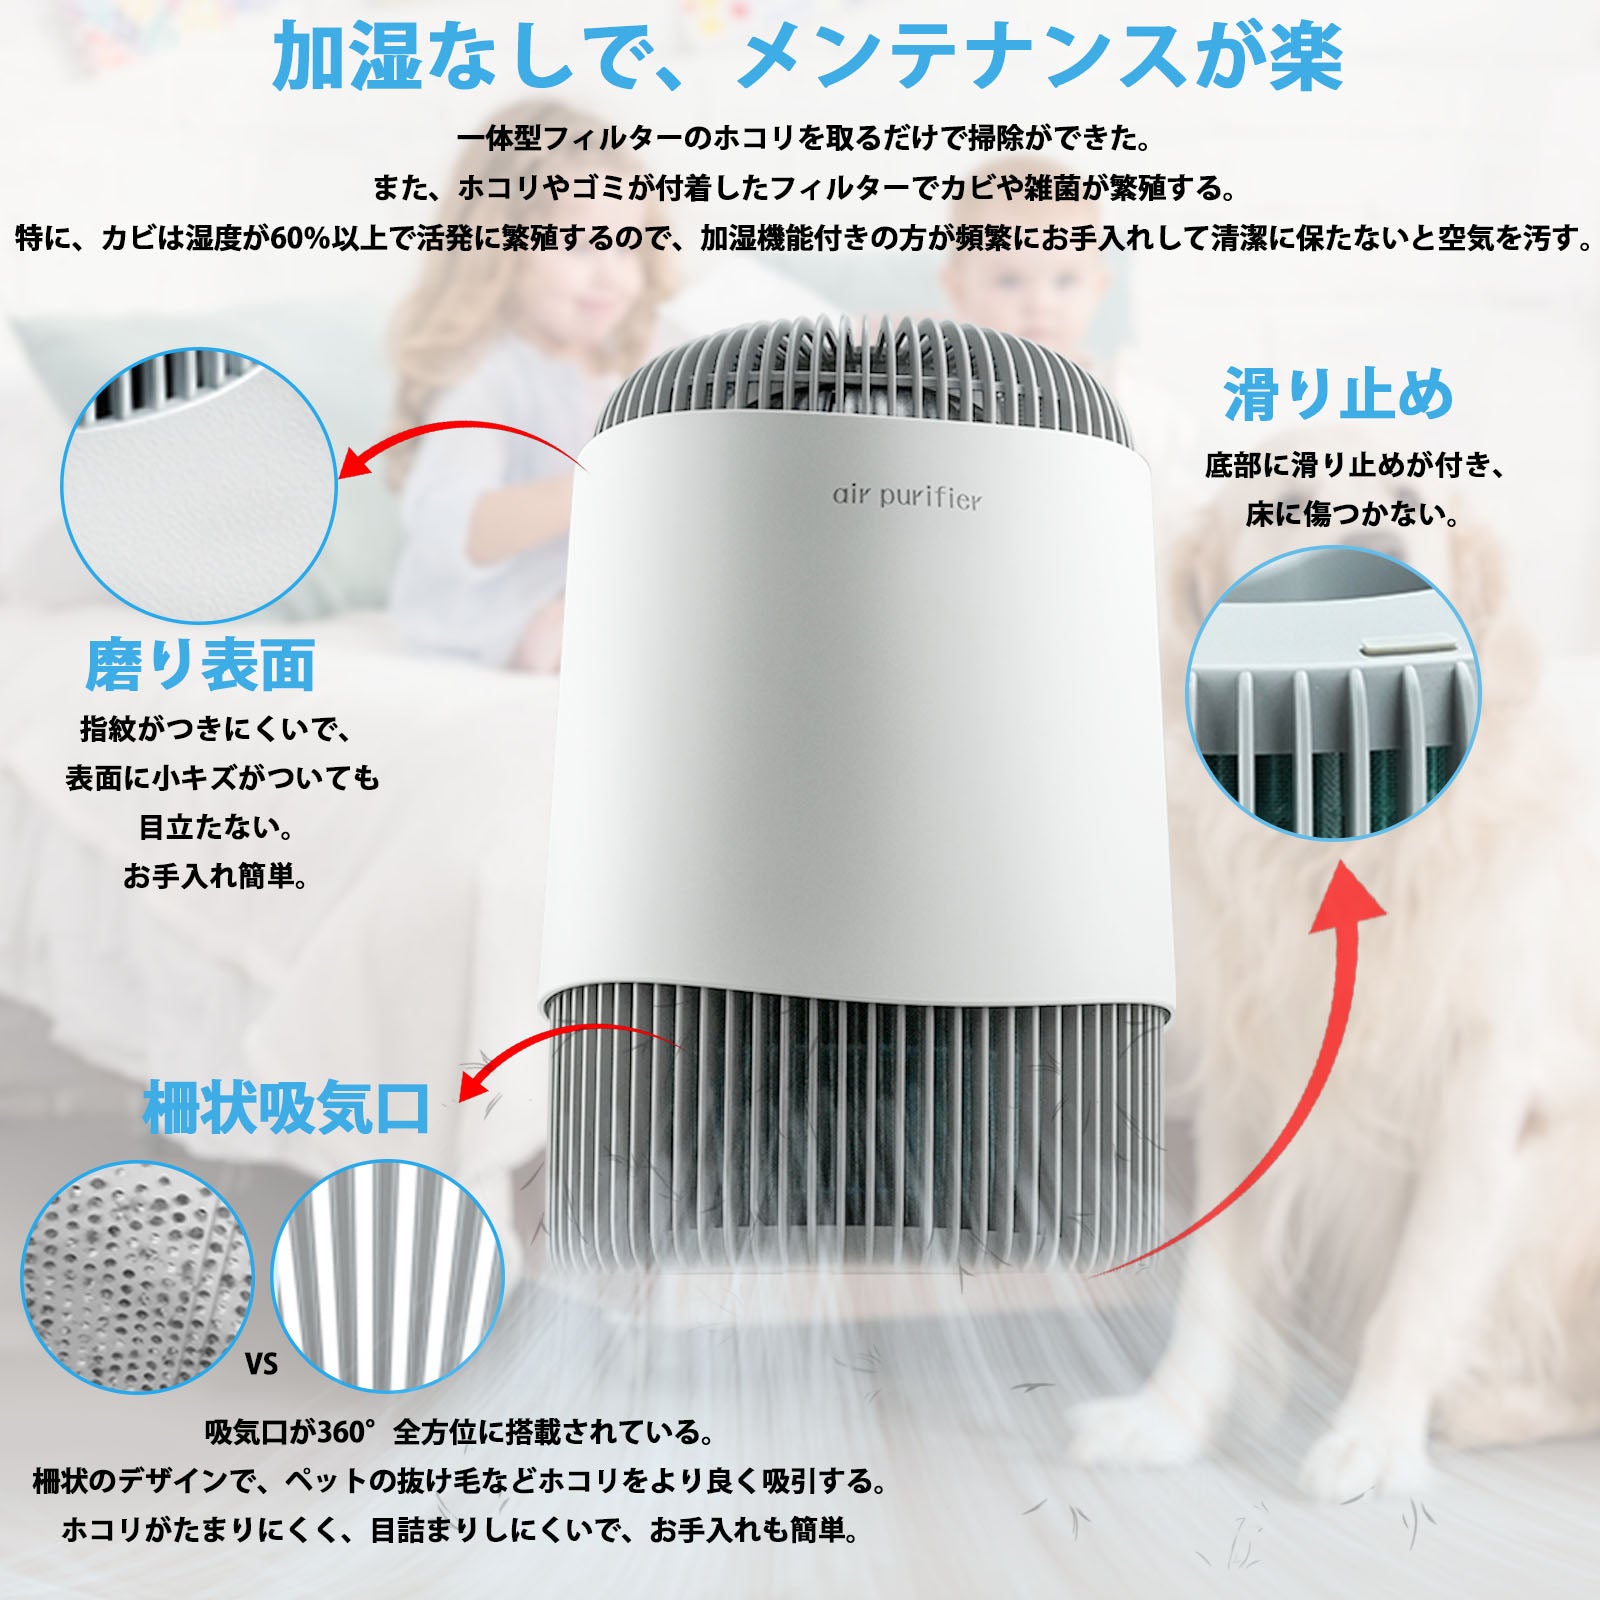 多重フィルター空気清浄機 360°吸引 チャイルドロック機能付き+apple-en.jp